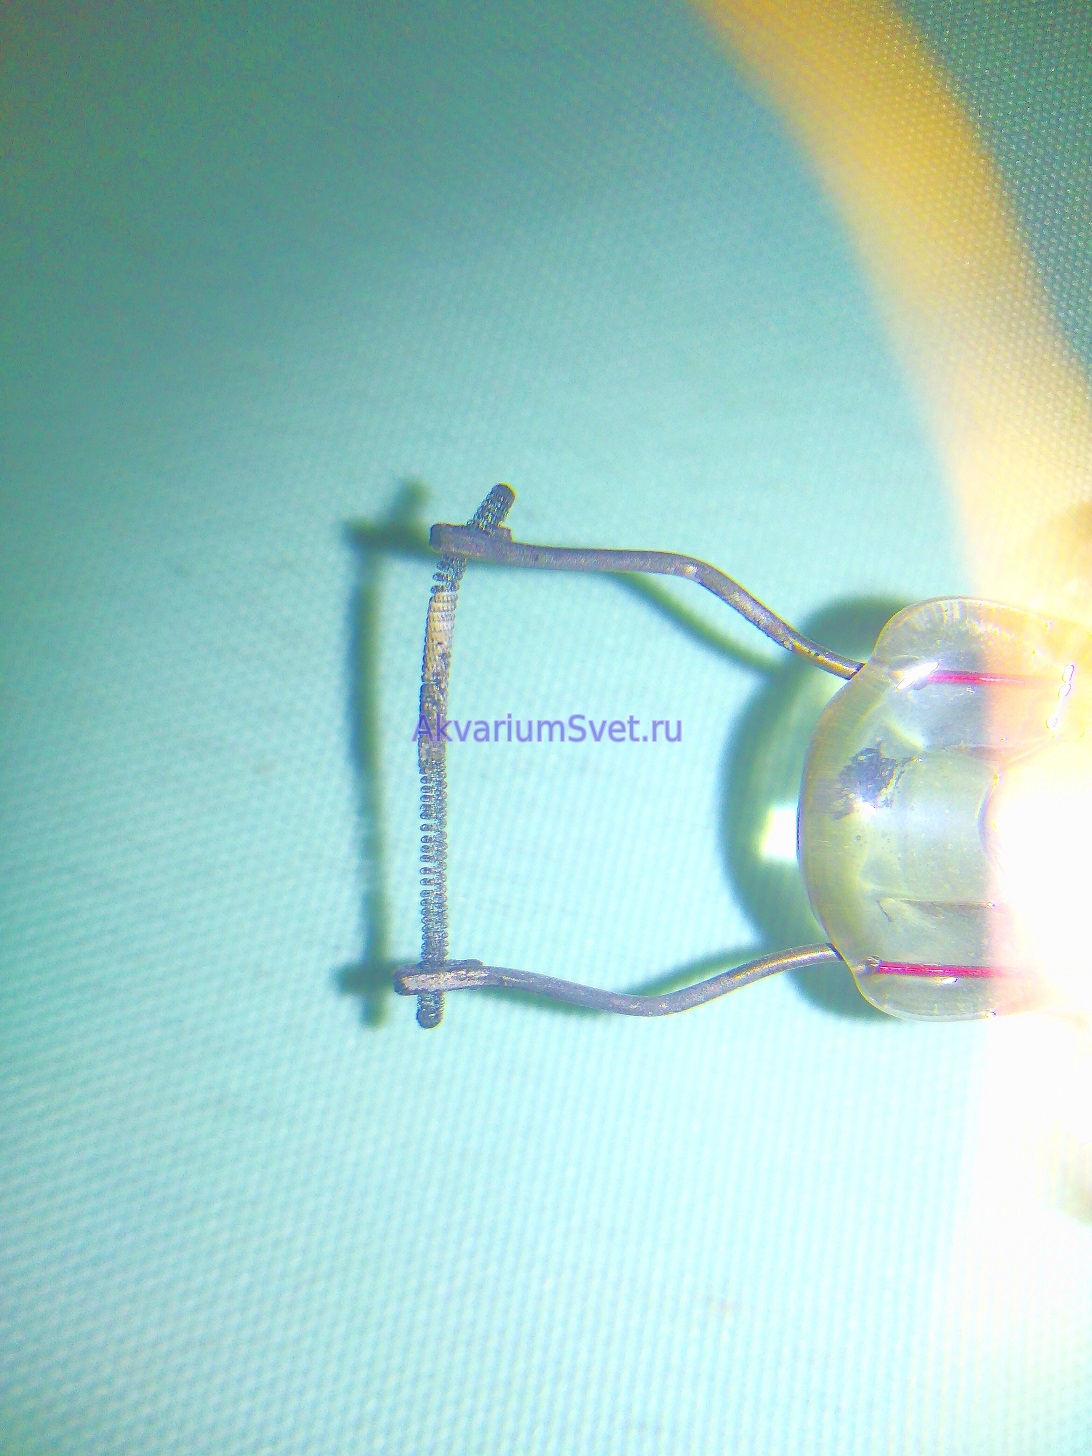 Электроды люминесцентной лампы представляют собой вольфрамовые нити, покрытые пастой (активной массой) из щелочноземельных металлов. Эта паста и обеспечивает стабильный тлеющий разряд, если бы ее не было, вольфрамовые нити очень скоро перегрелись бы и сгорели. 